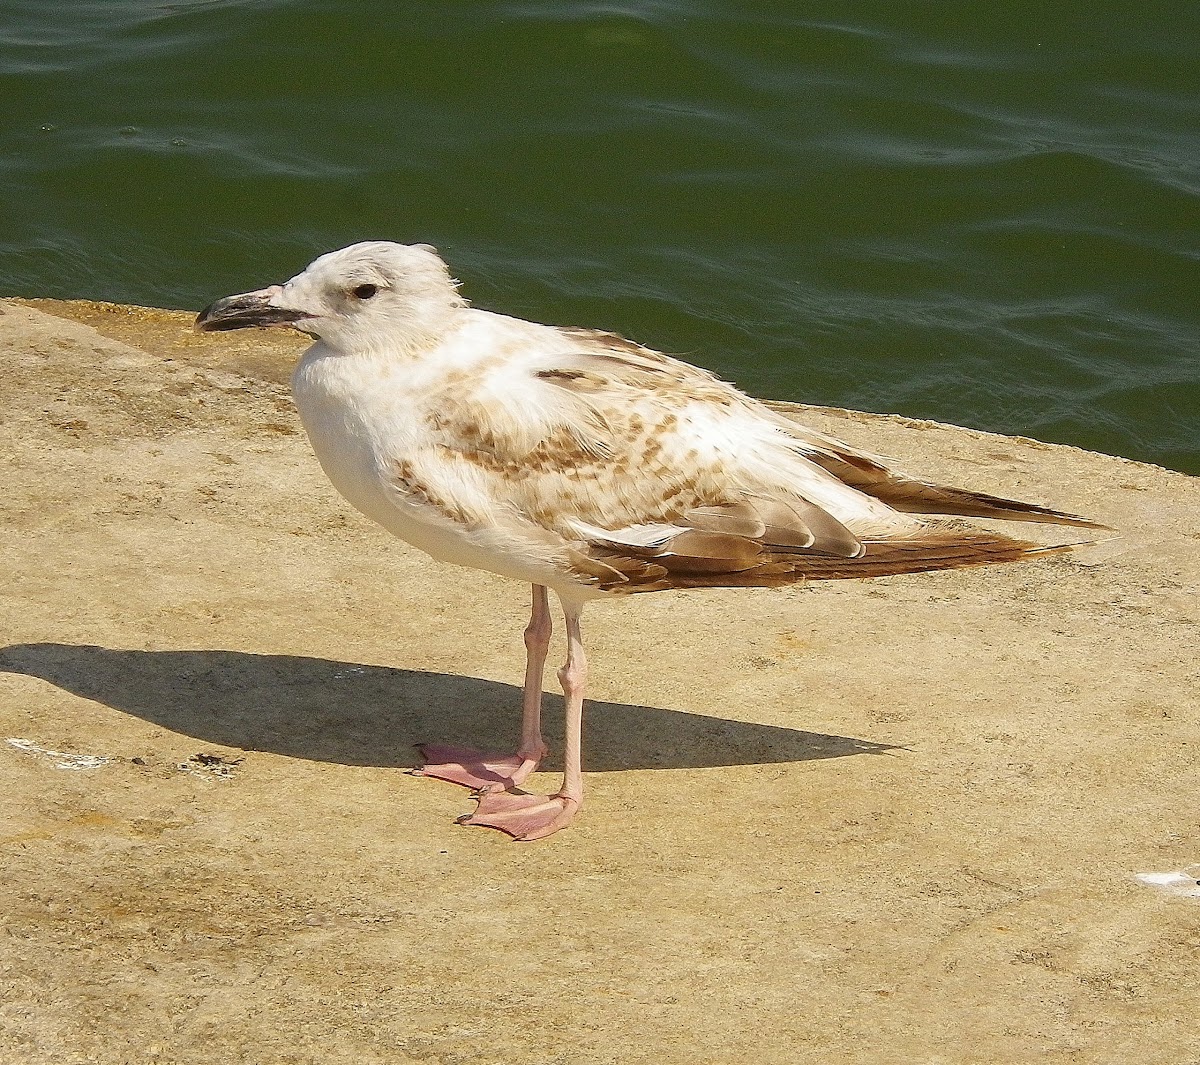 Caspian Gull, galeb klaukavac